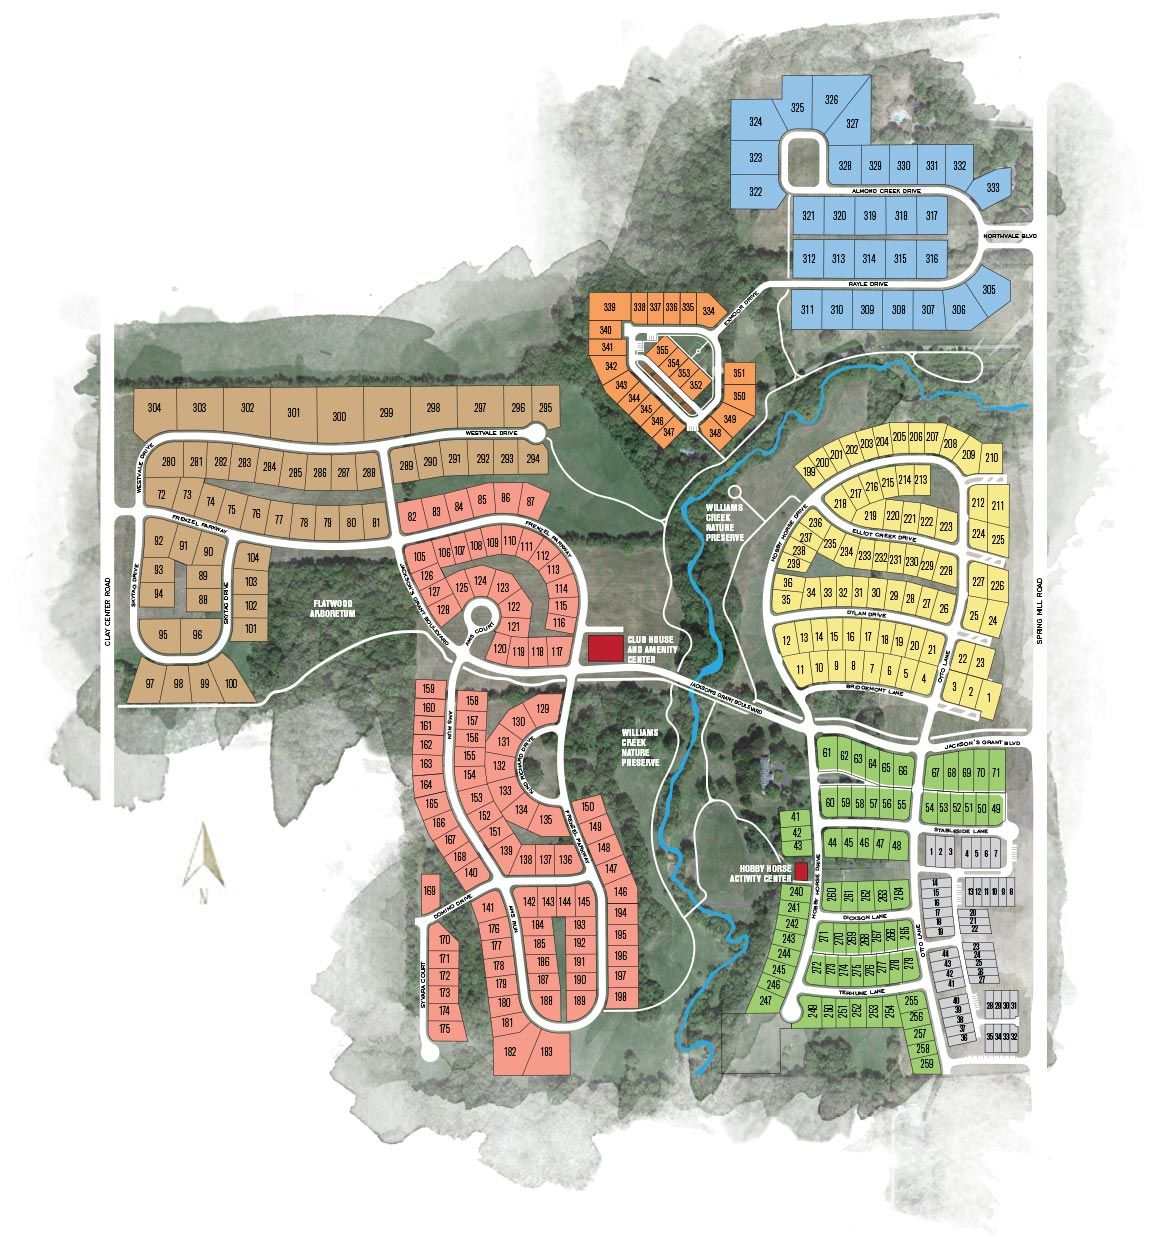 Jackson's Grant neighborhood map